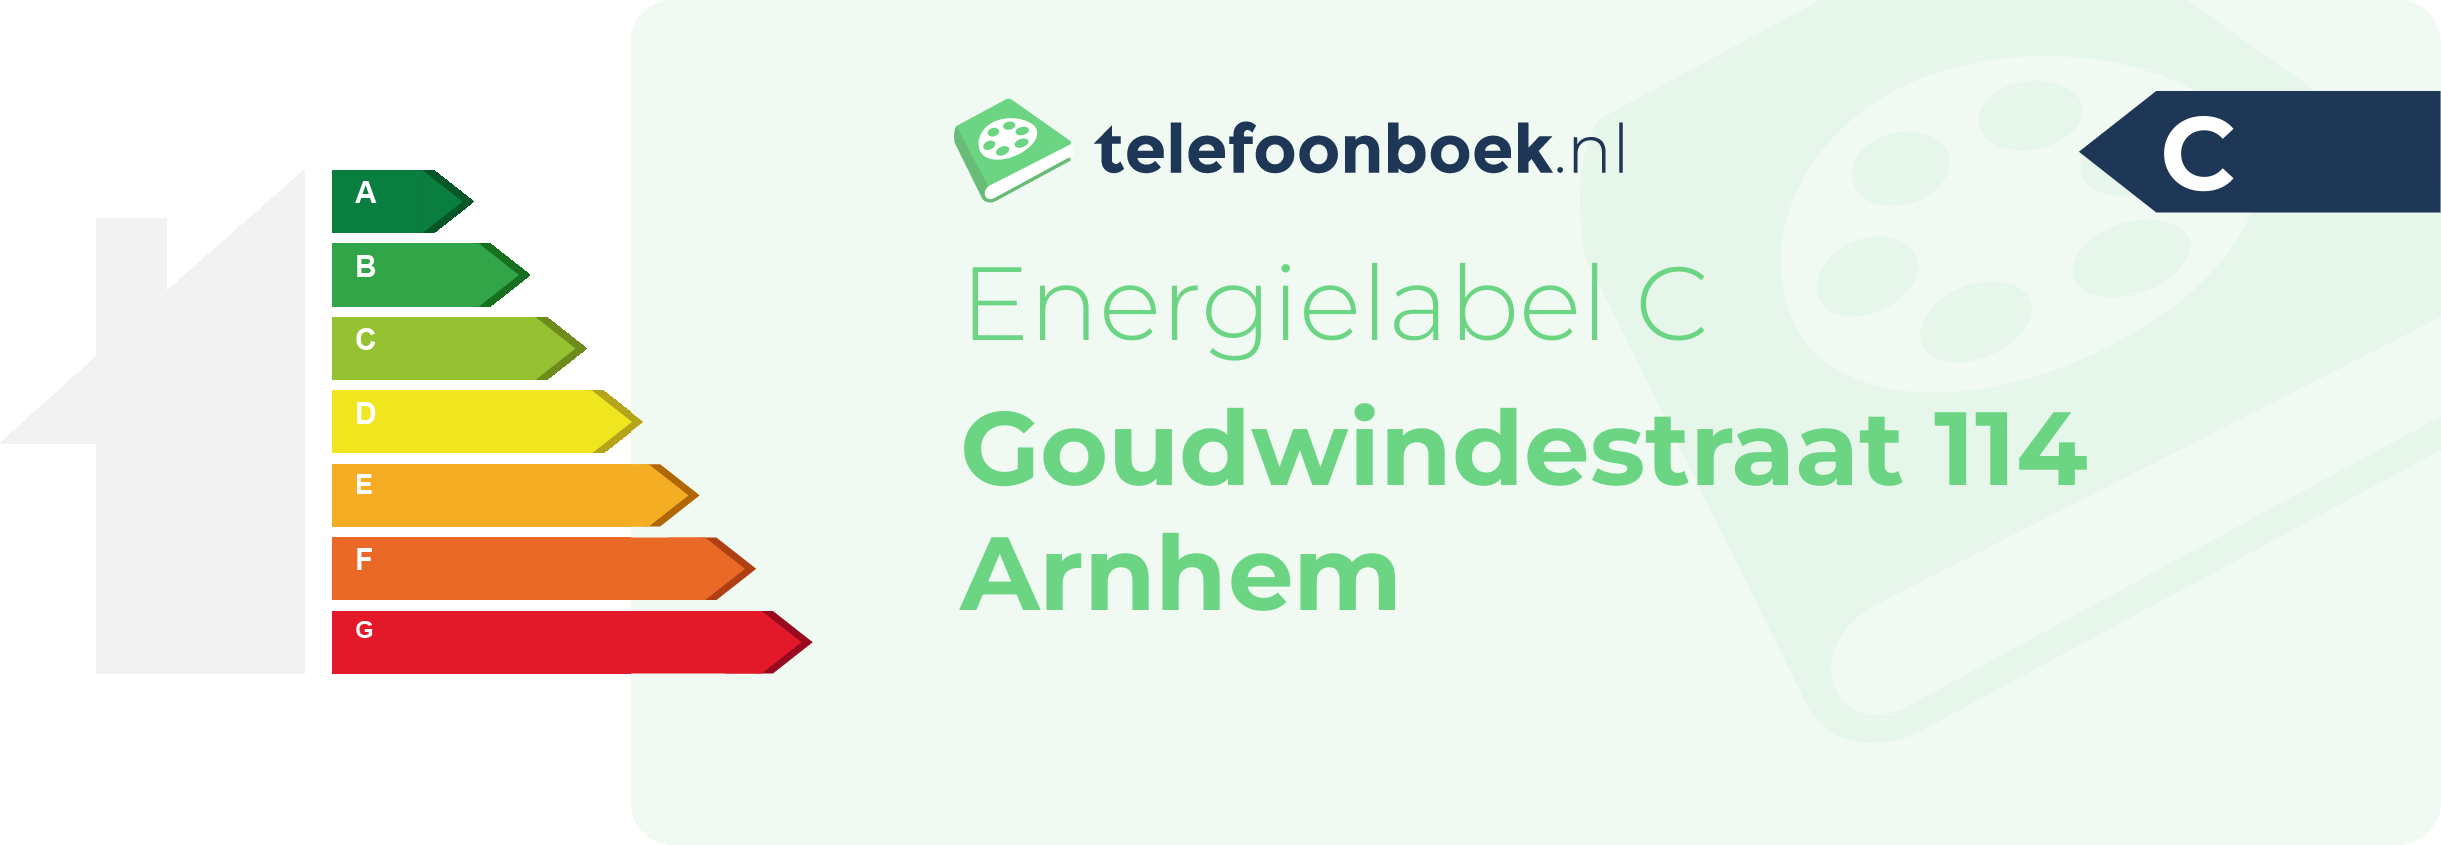 Energielabel Goudwindestraat 114 Arnhem